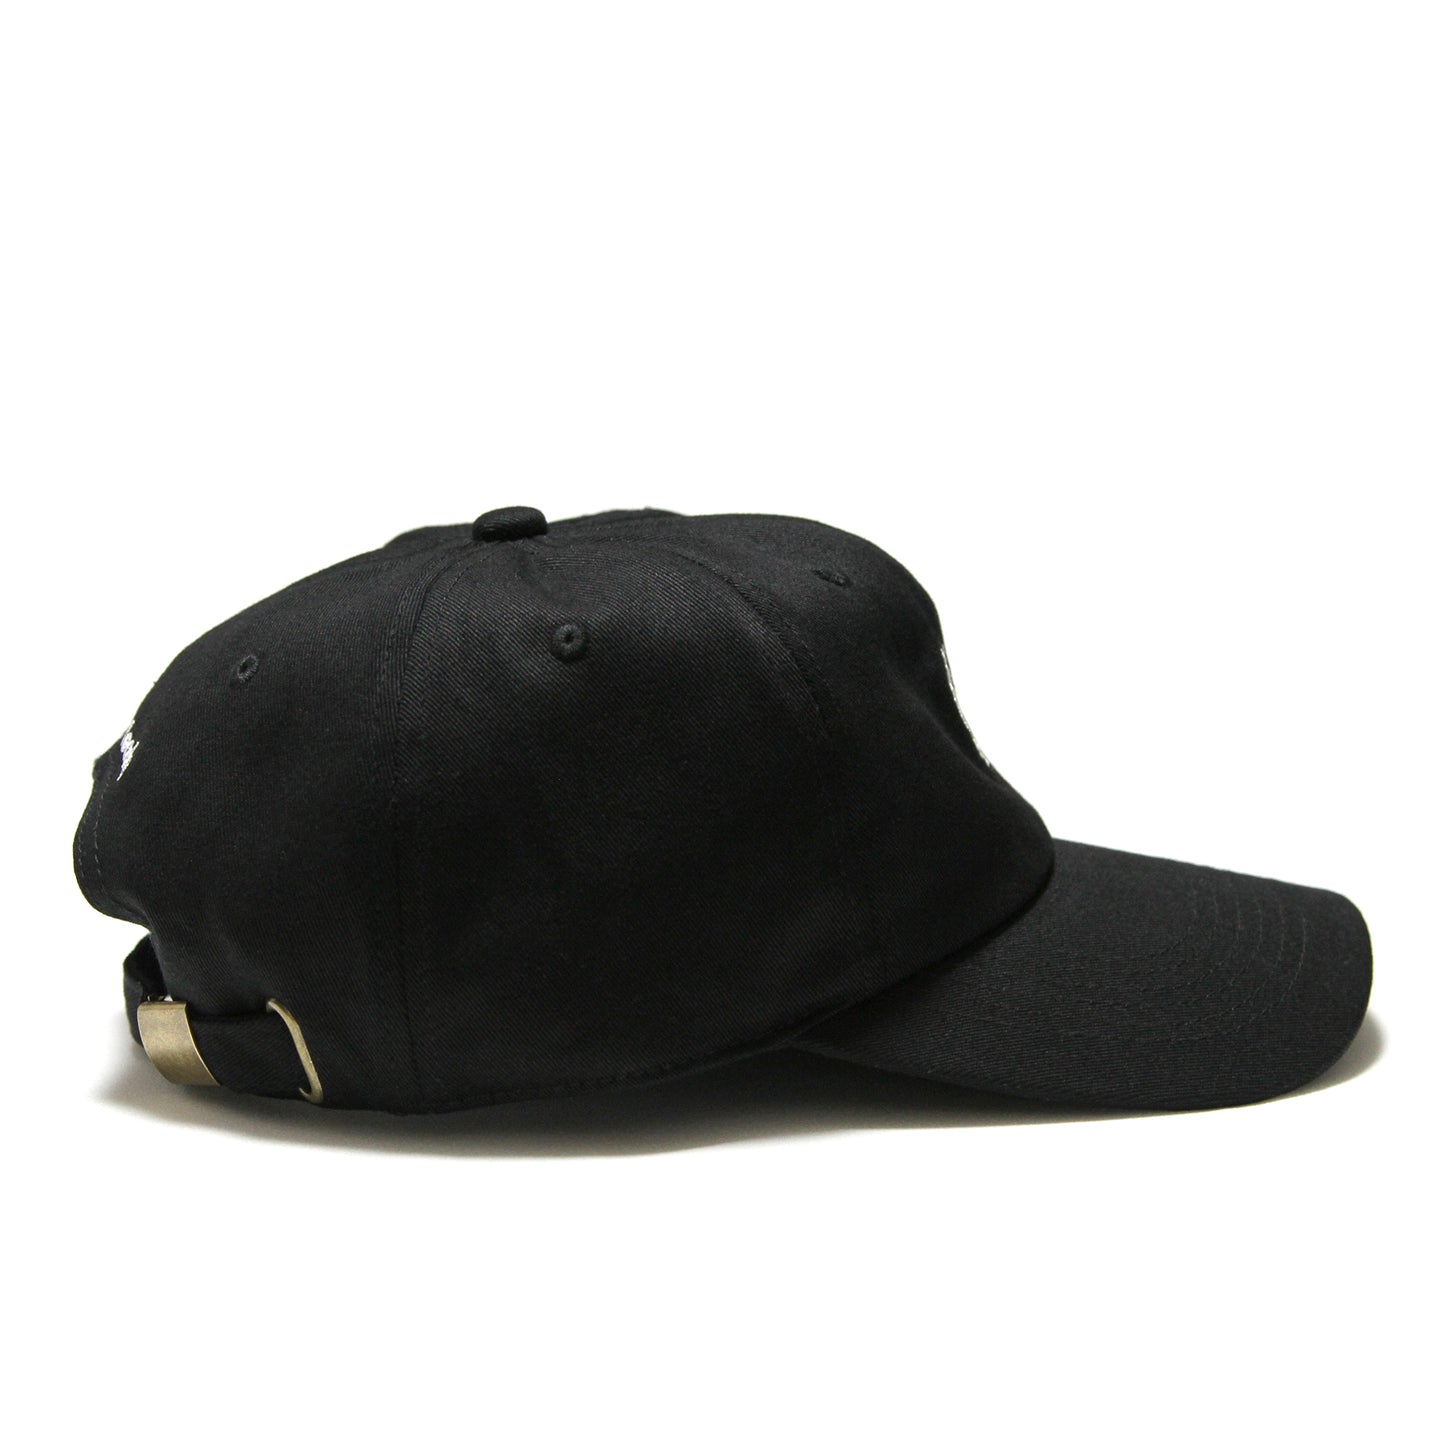 FTL - Crest Cap/Black